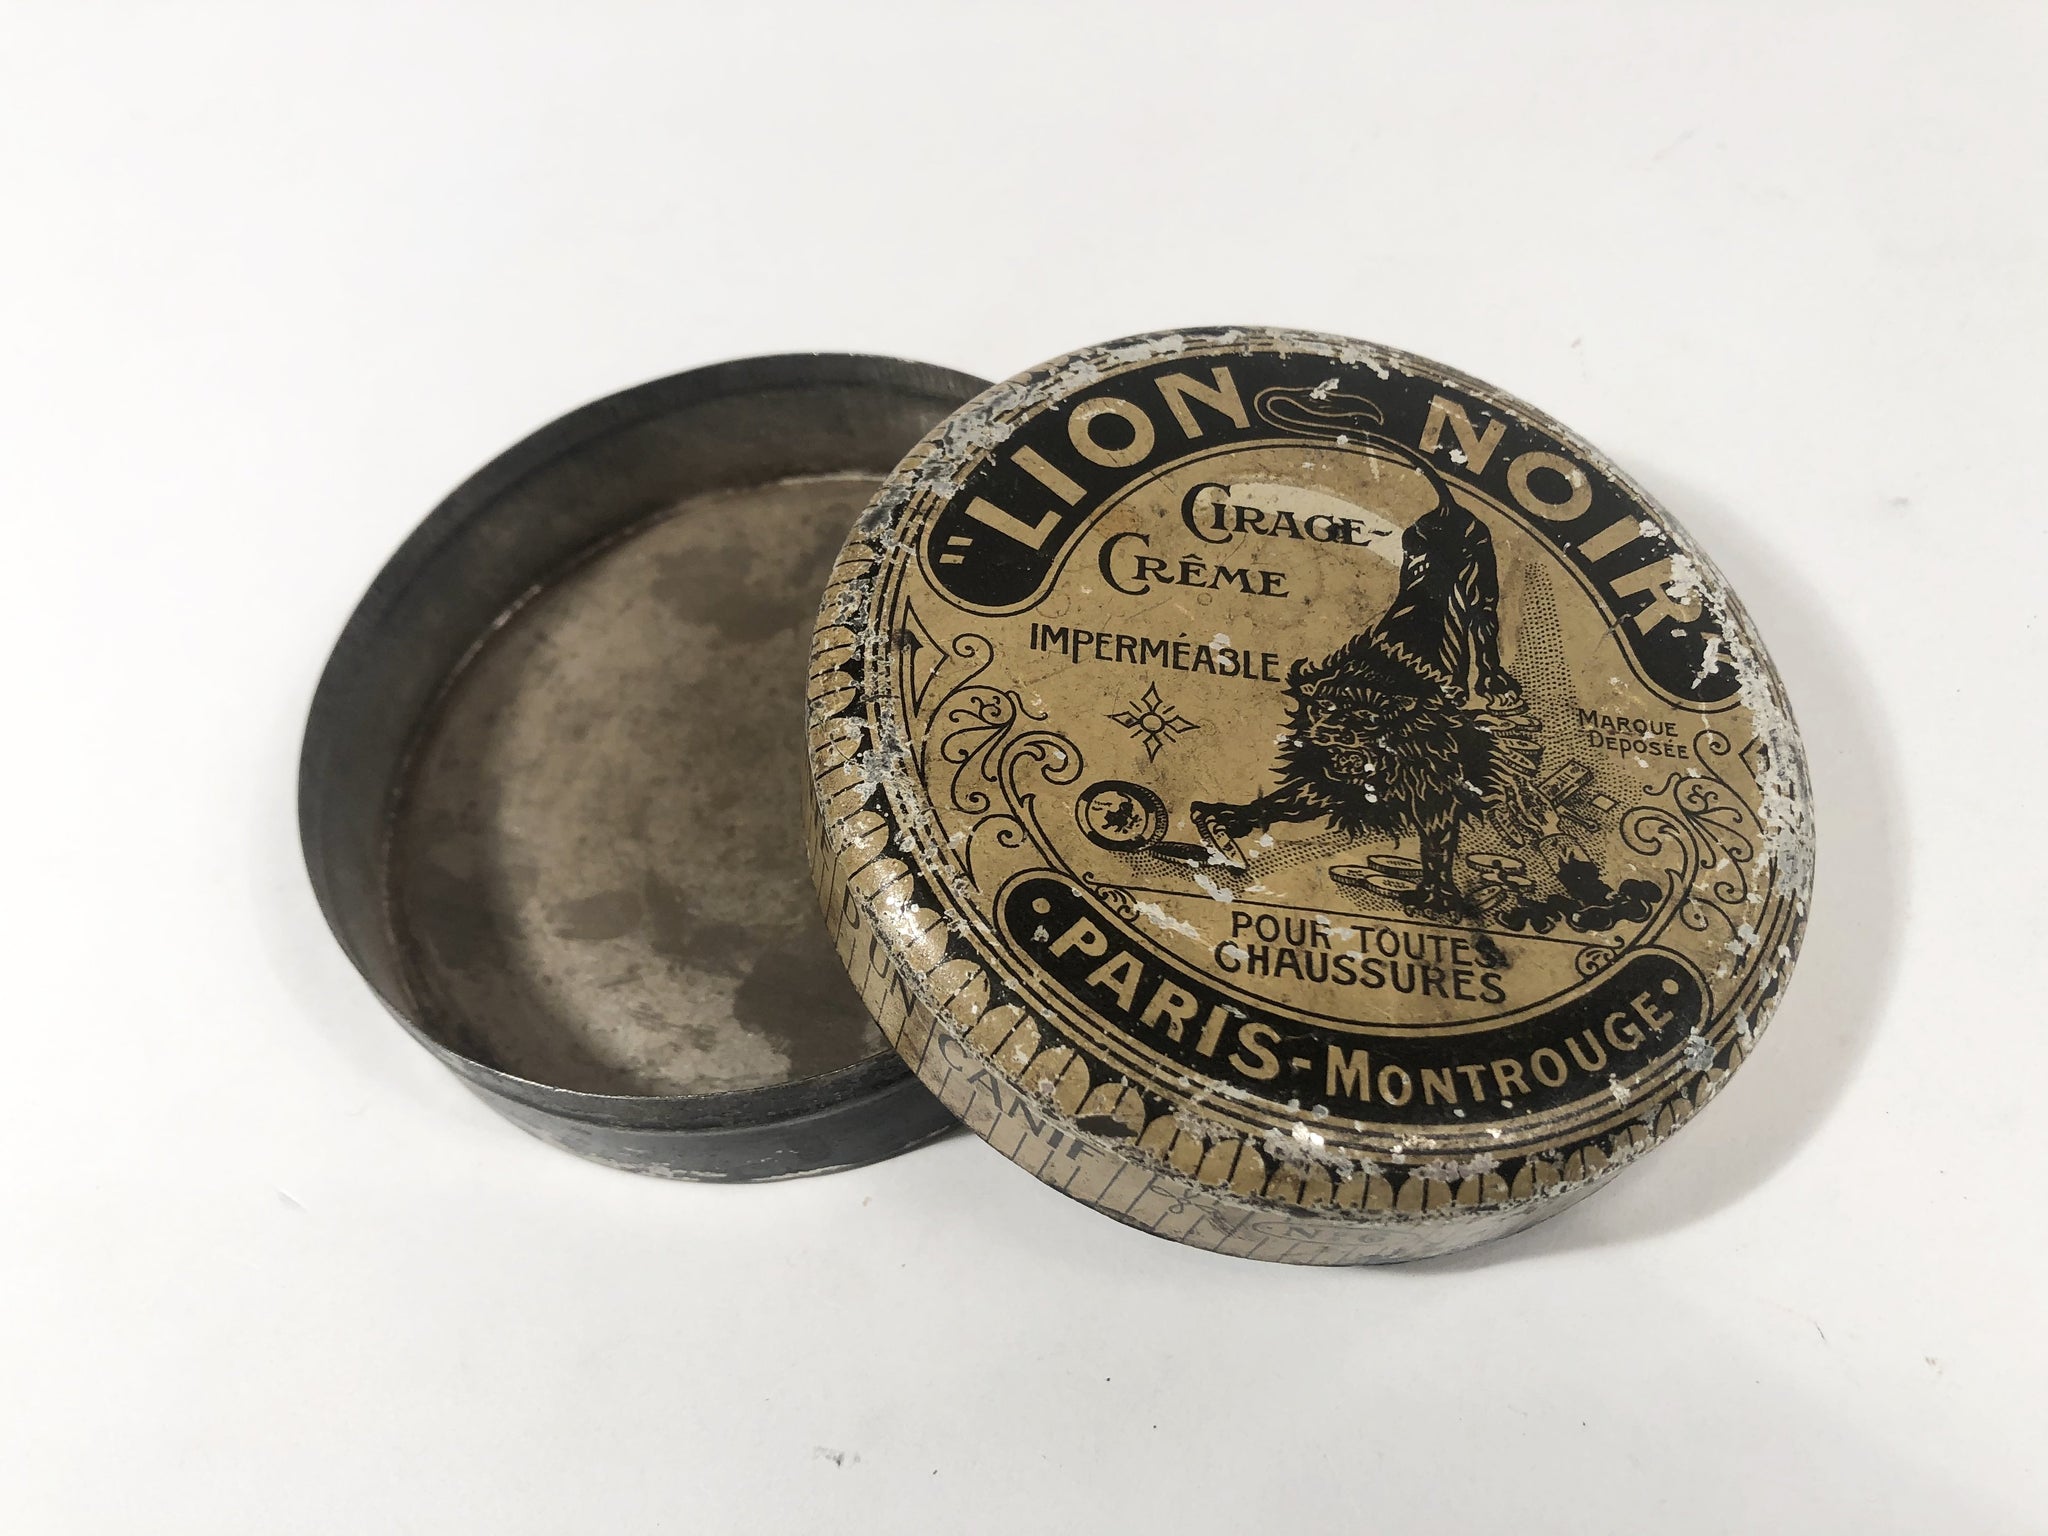 LION NOIR Cirage Creme, 1920's, French Waterproof Shoe Polish Tin